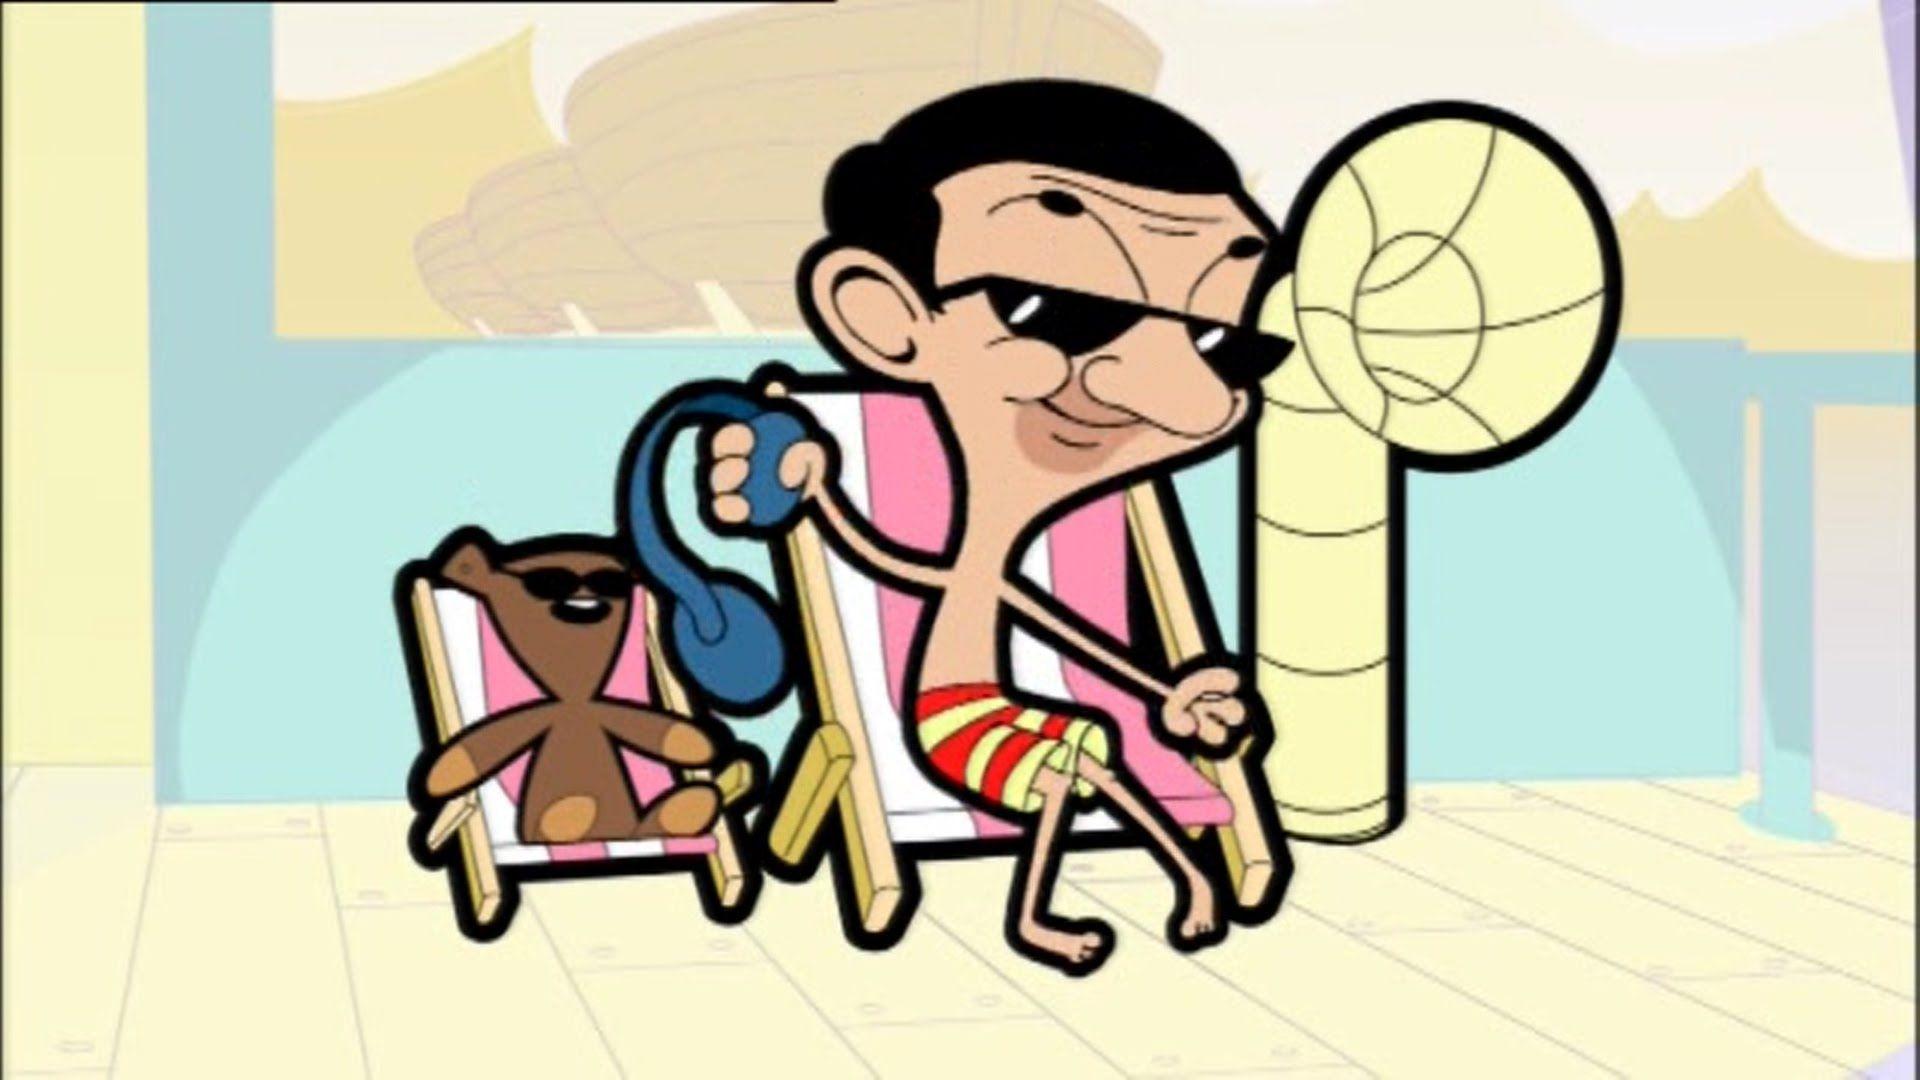 Mr Bean Cartoon Bean The Animated Series